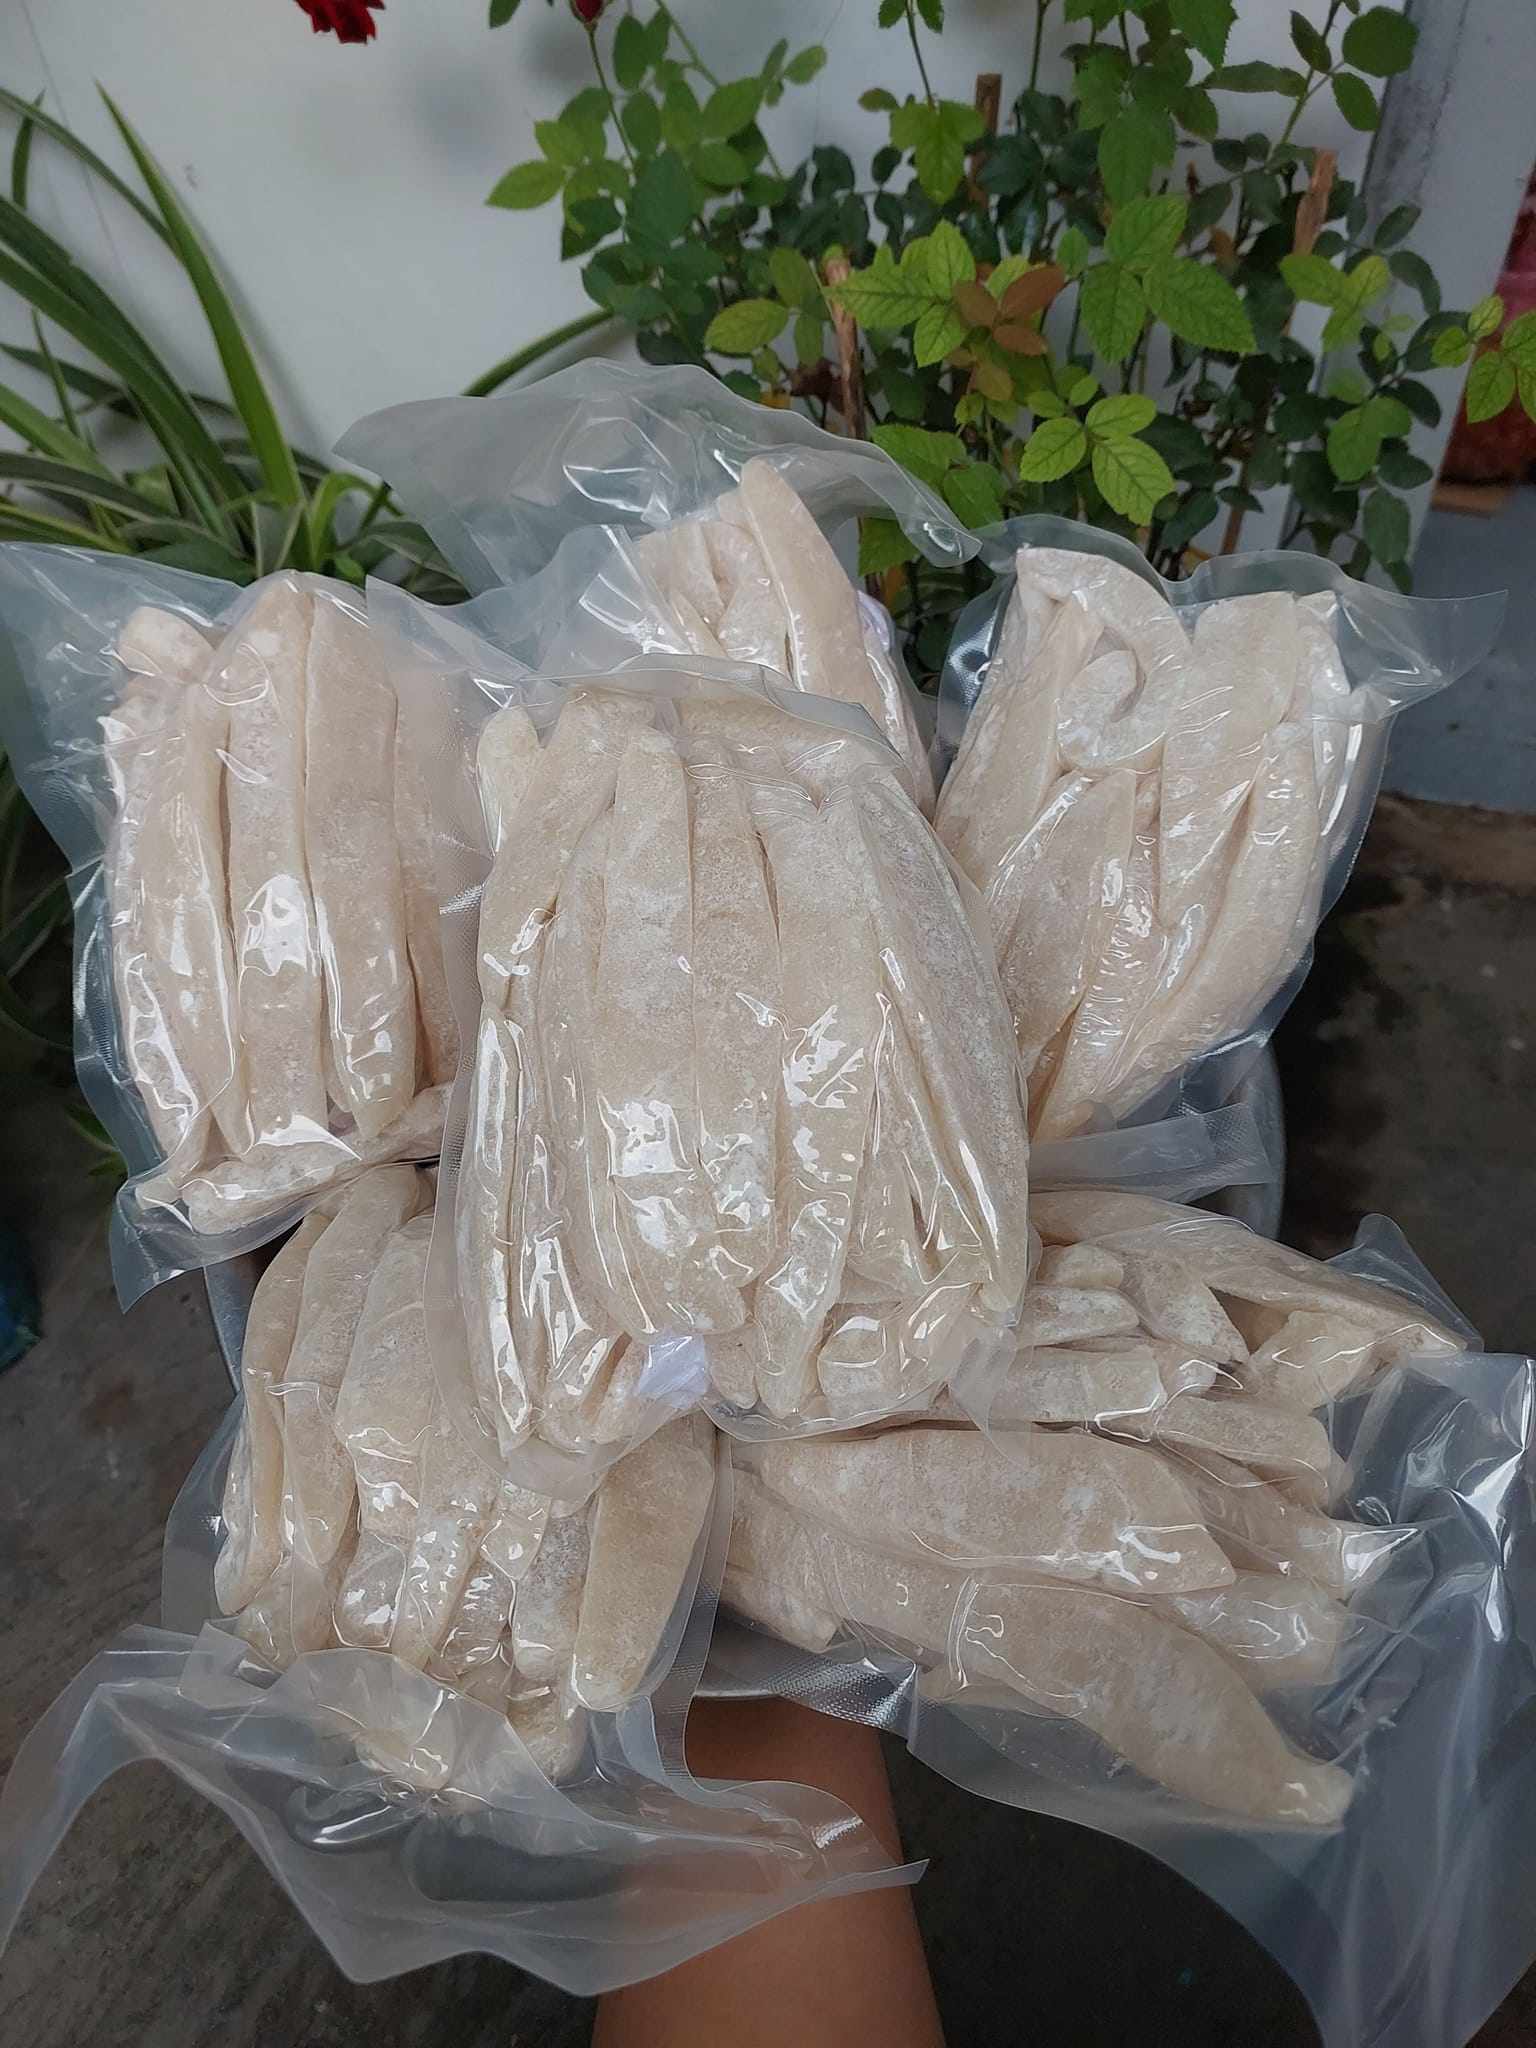 Dừa sáp hiện tại đang được bán giá 380.000 đồng/kg, bán lẻ.